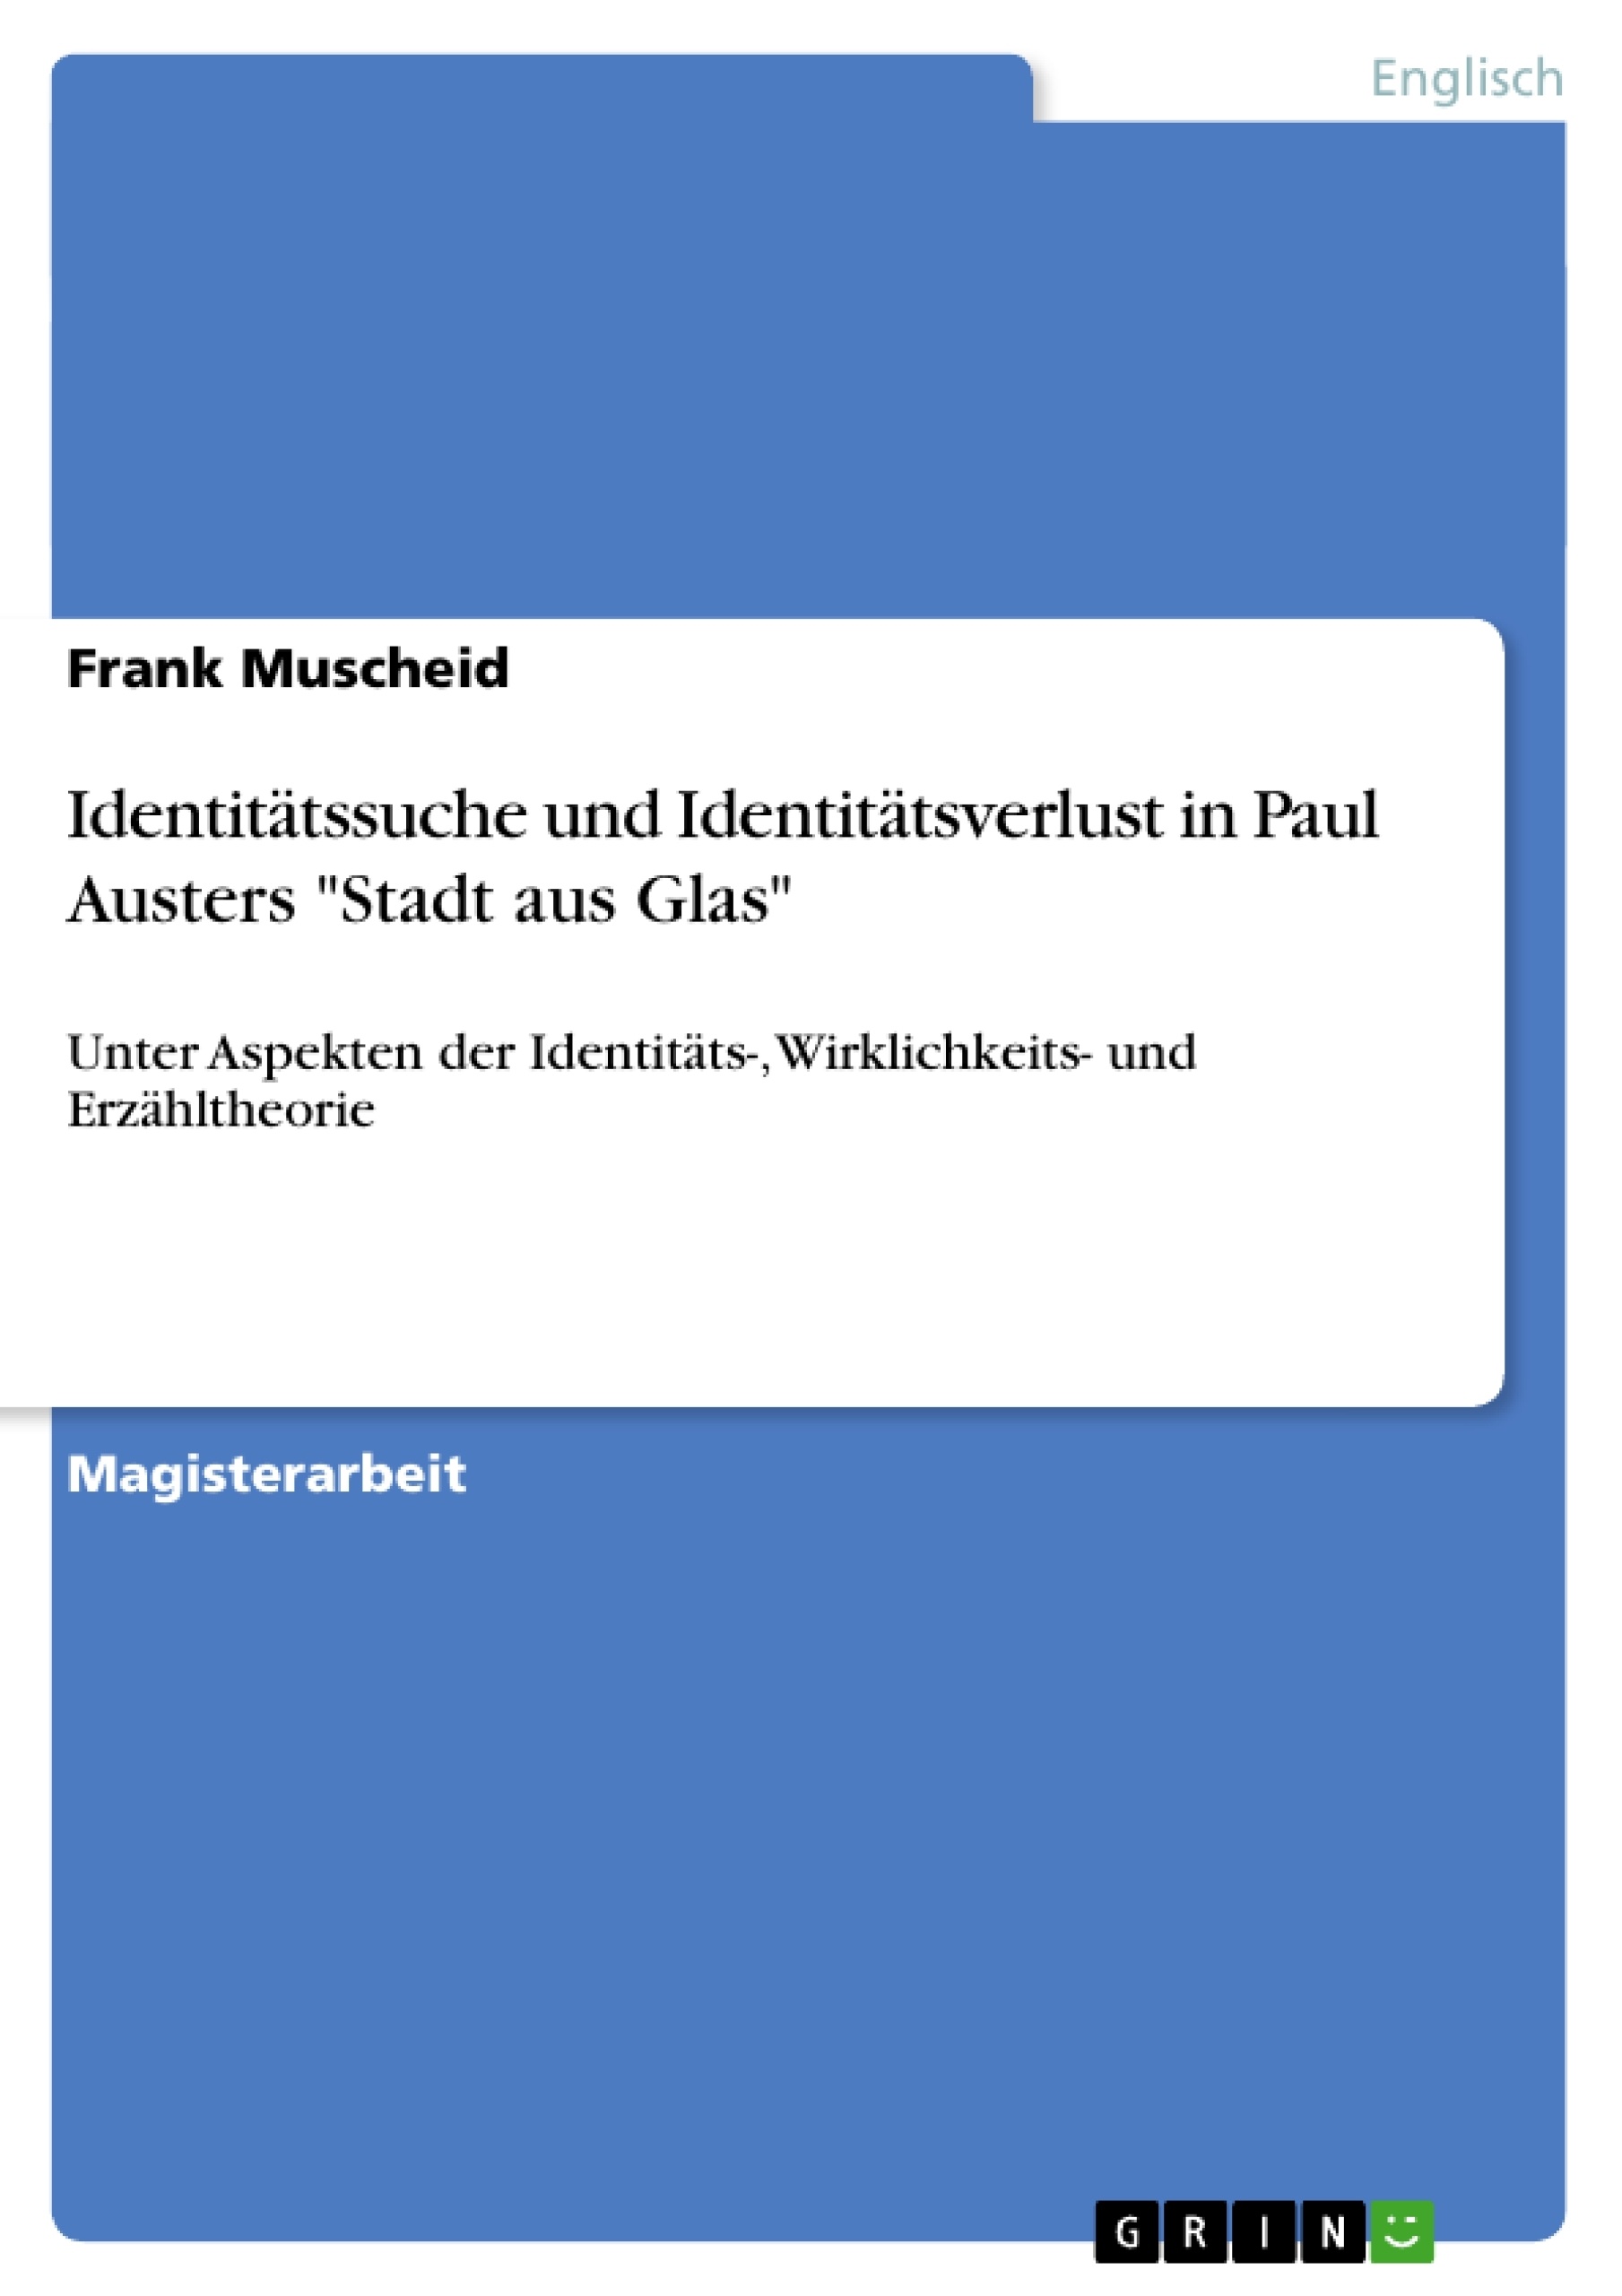 Título: Identitätssuche und Identitätsverlust in Paul Austers "Stadt aus Glas"